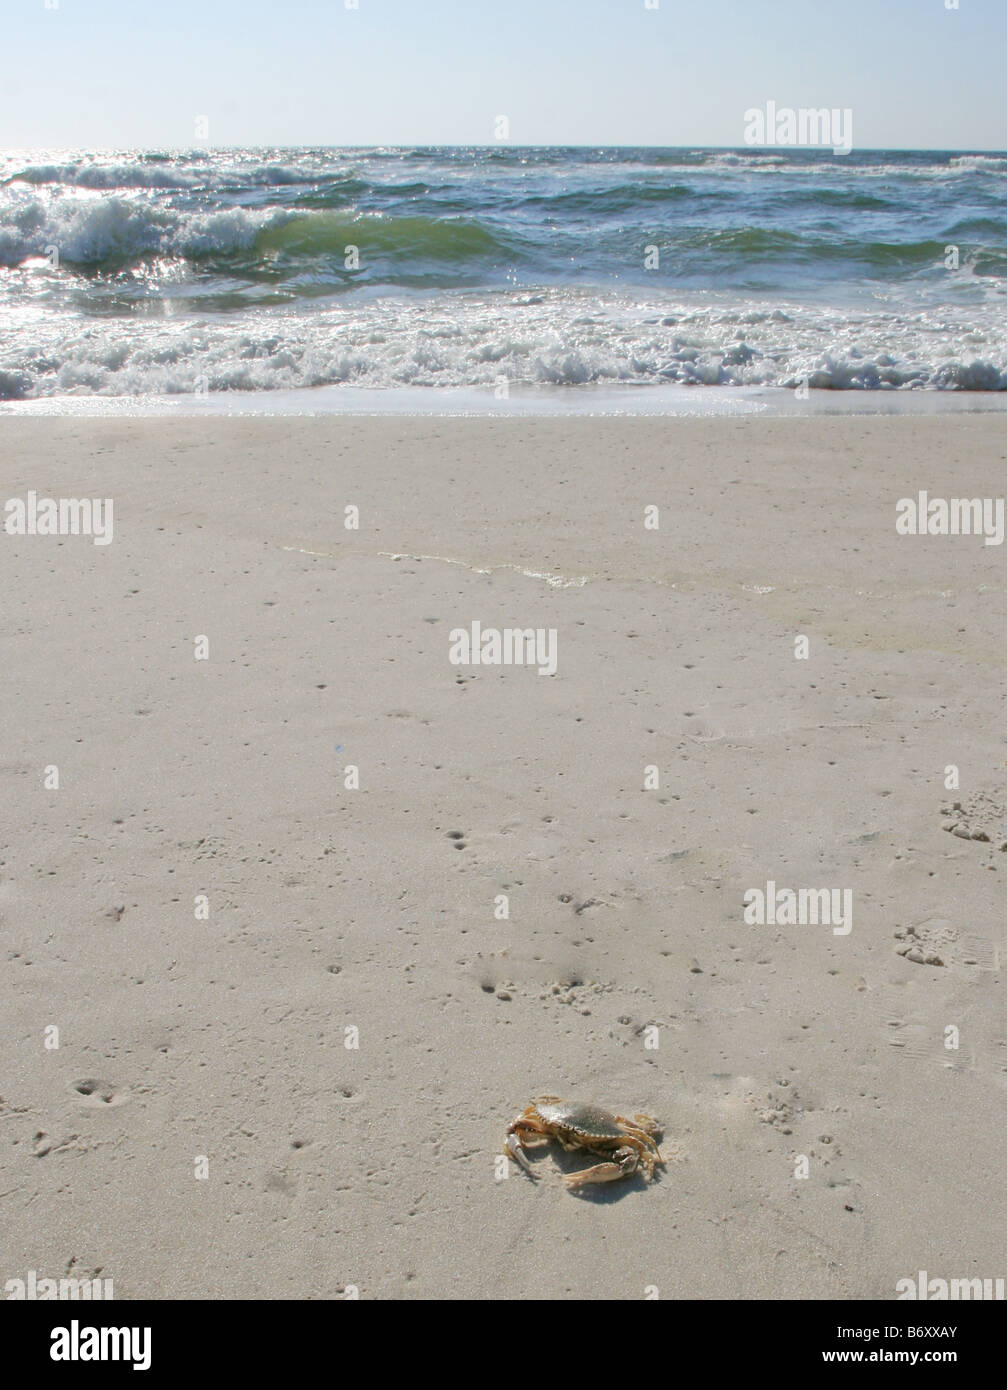 Forma di cuore granchio di mare a piedi sullo zucchero bianco litorale di sabbia spiaggia costa del golfo golfo del Messico pensacola florida con onde int di laminazione Foto Stock